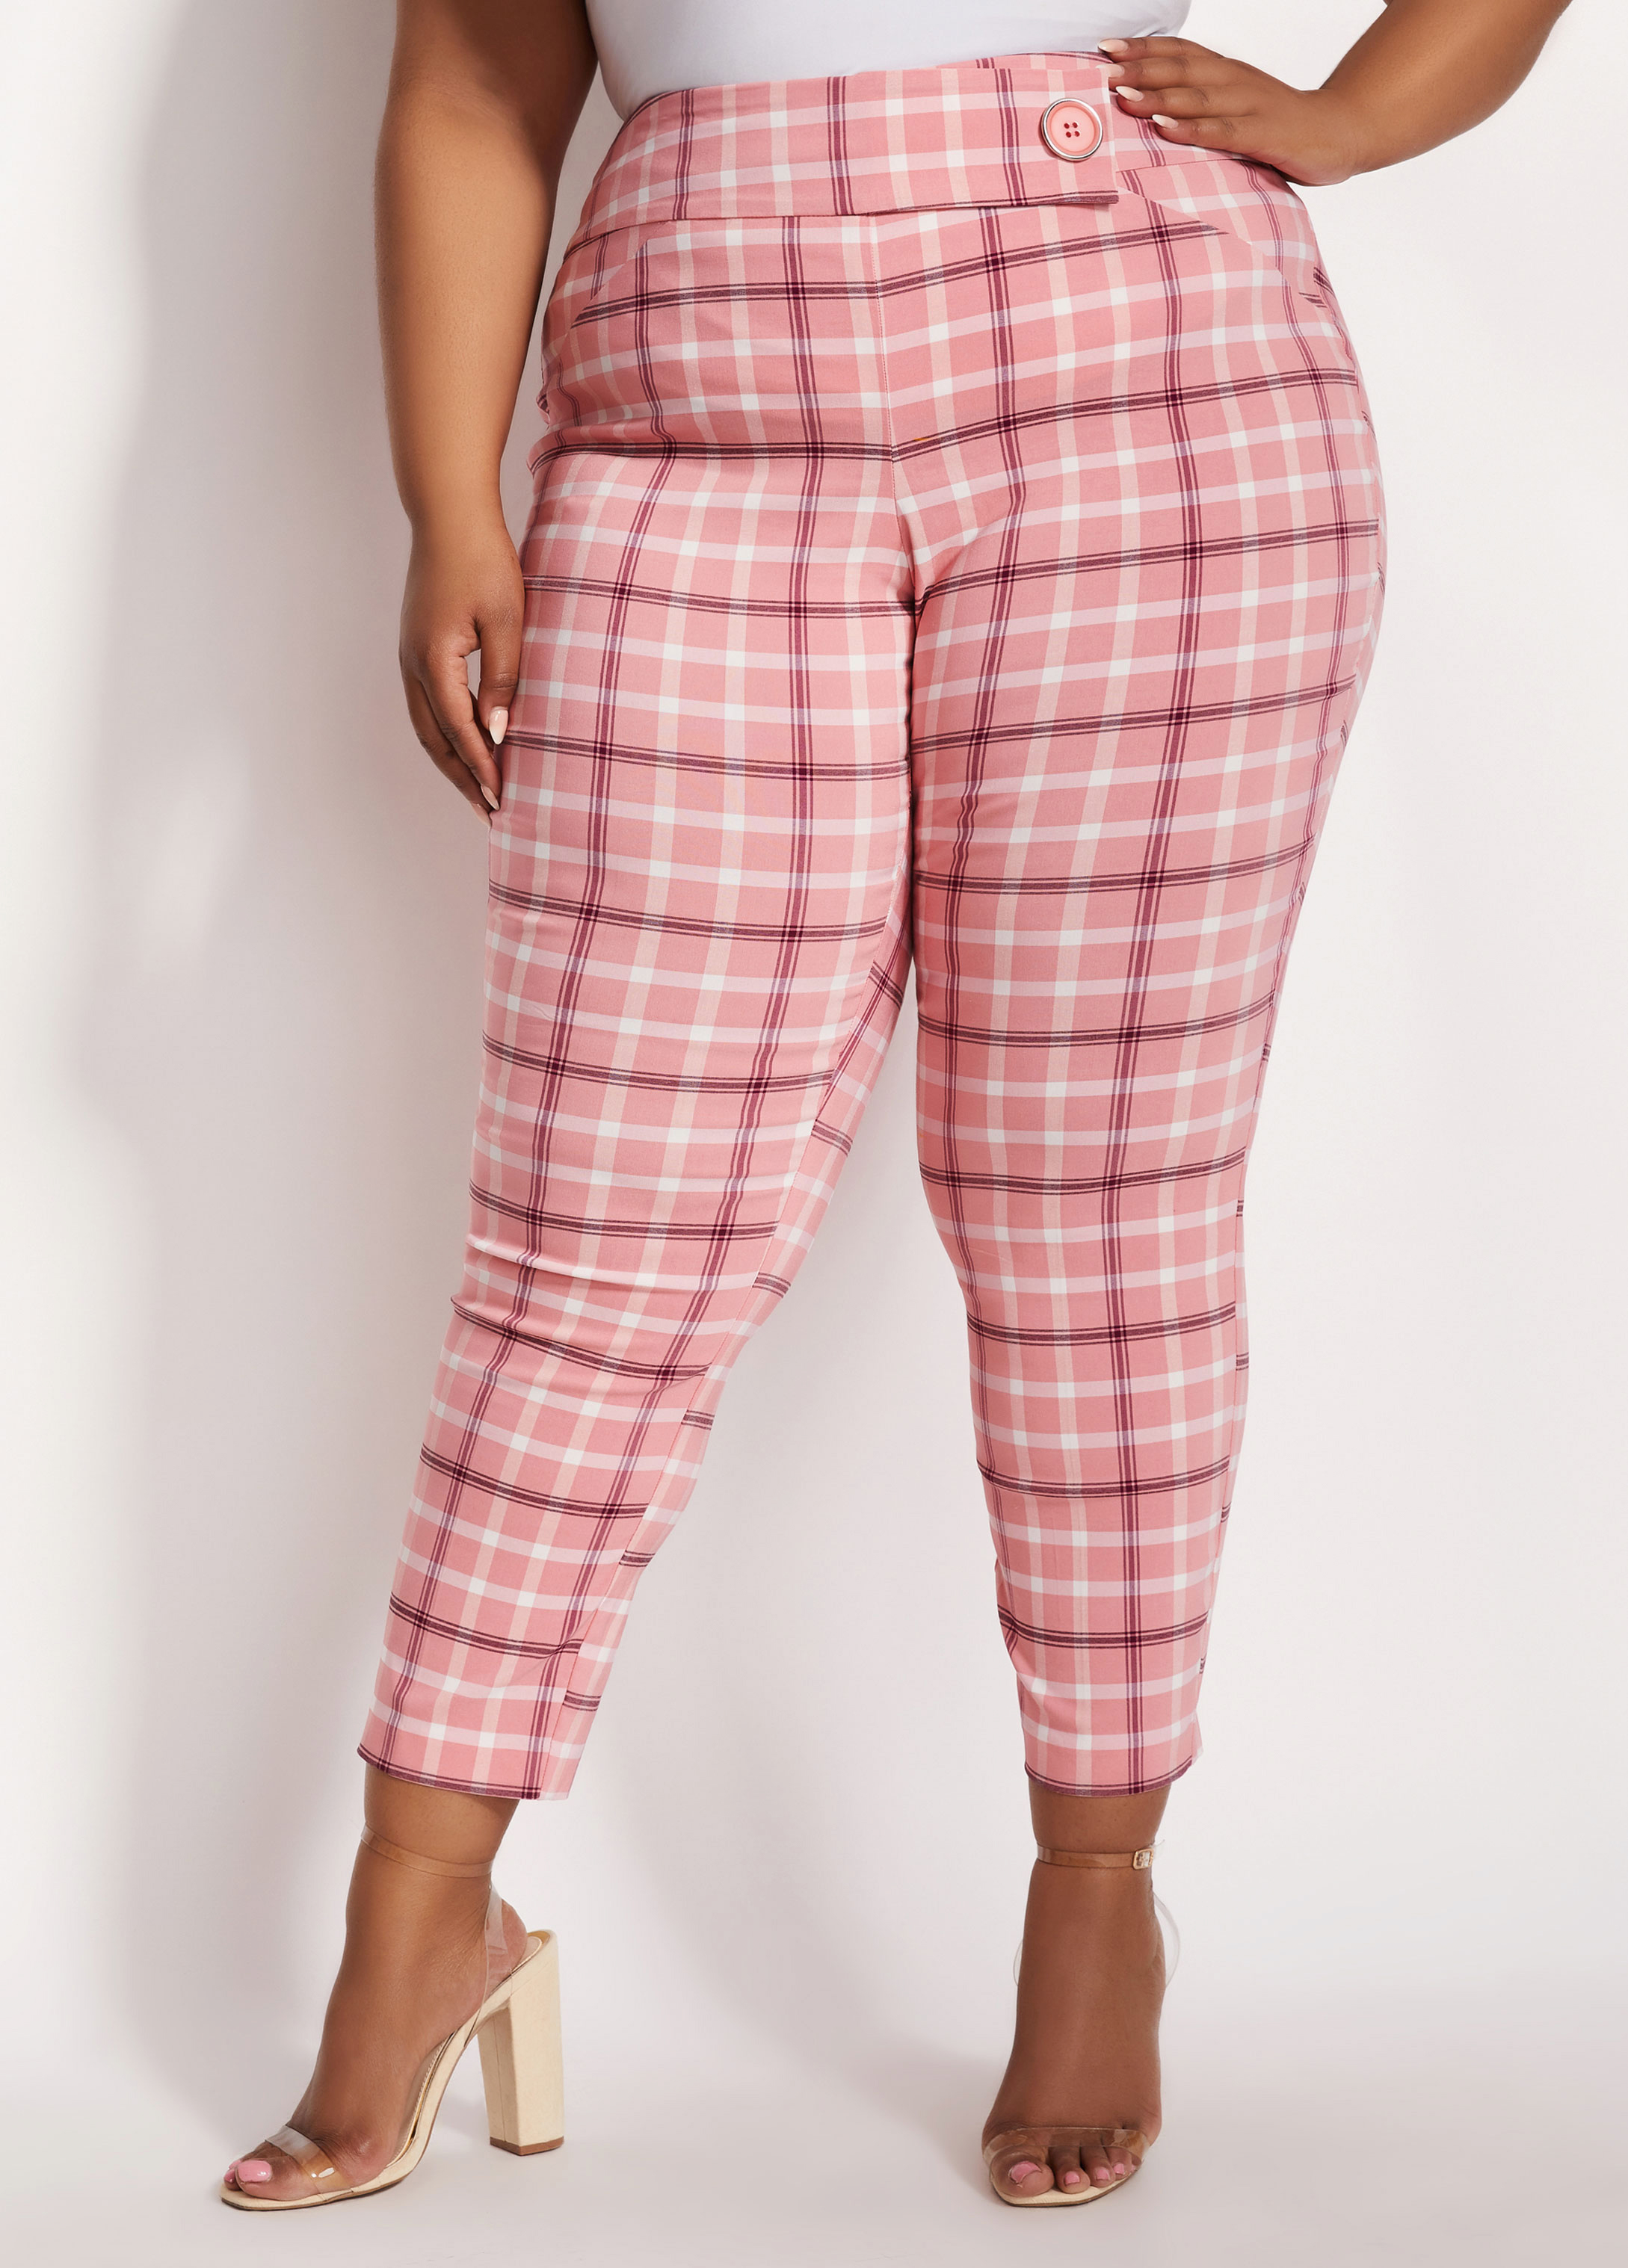 Pink Plaid Pants Plus Size